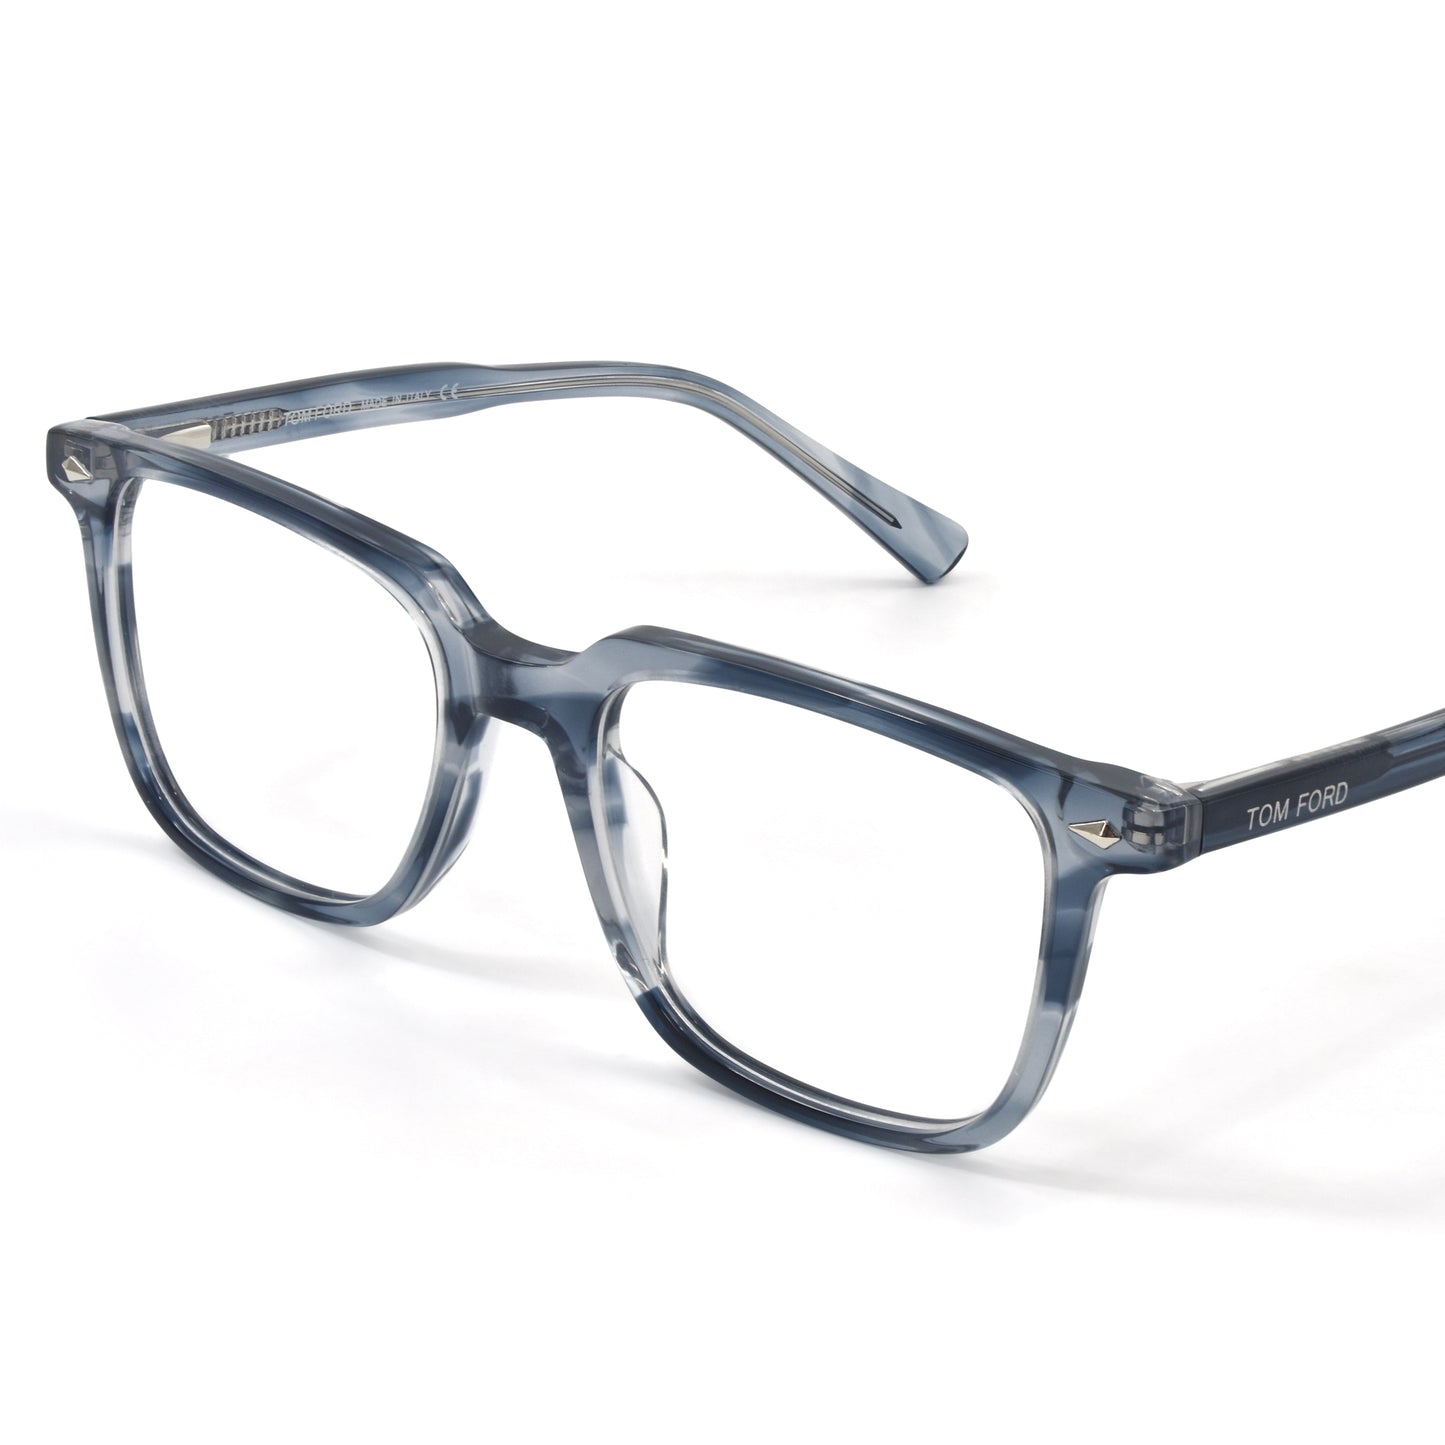 Trendy Stylish Optic Frame | TFord Frame 34 | Premium Quality Eye Glass